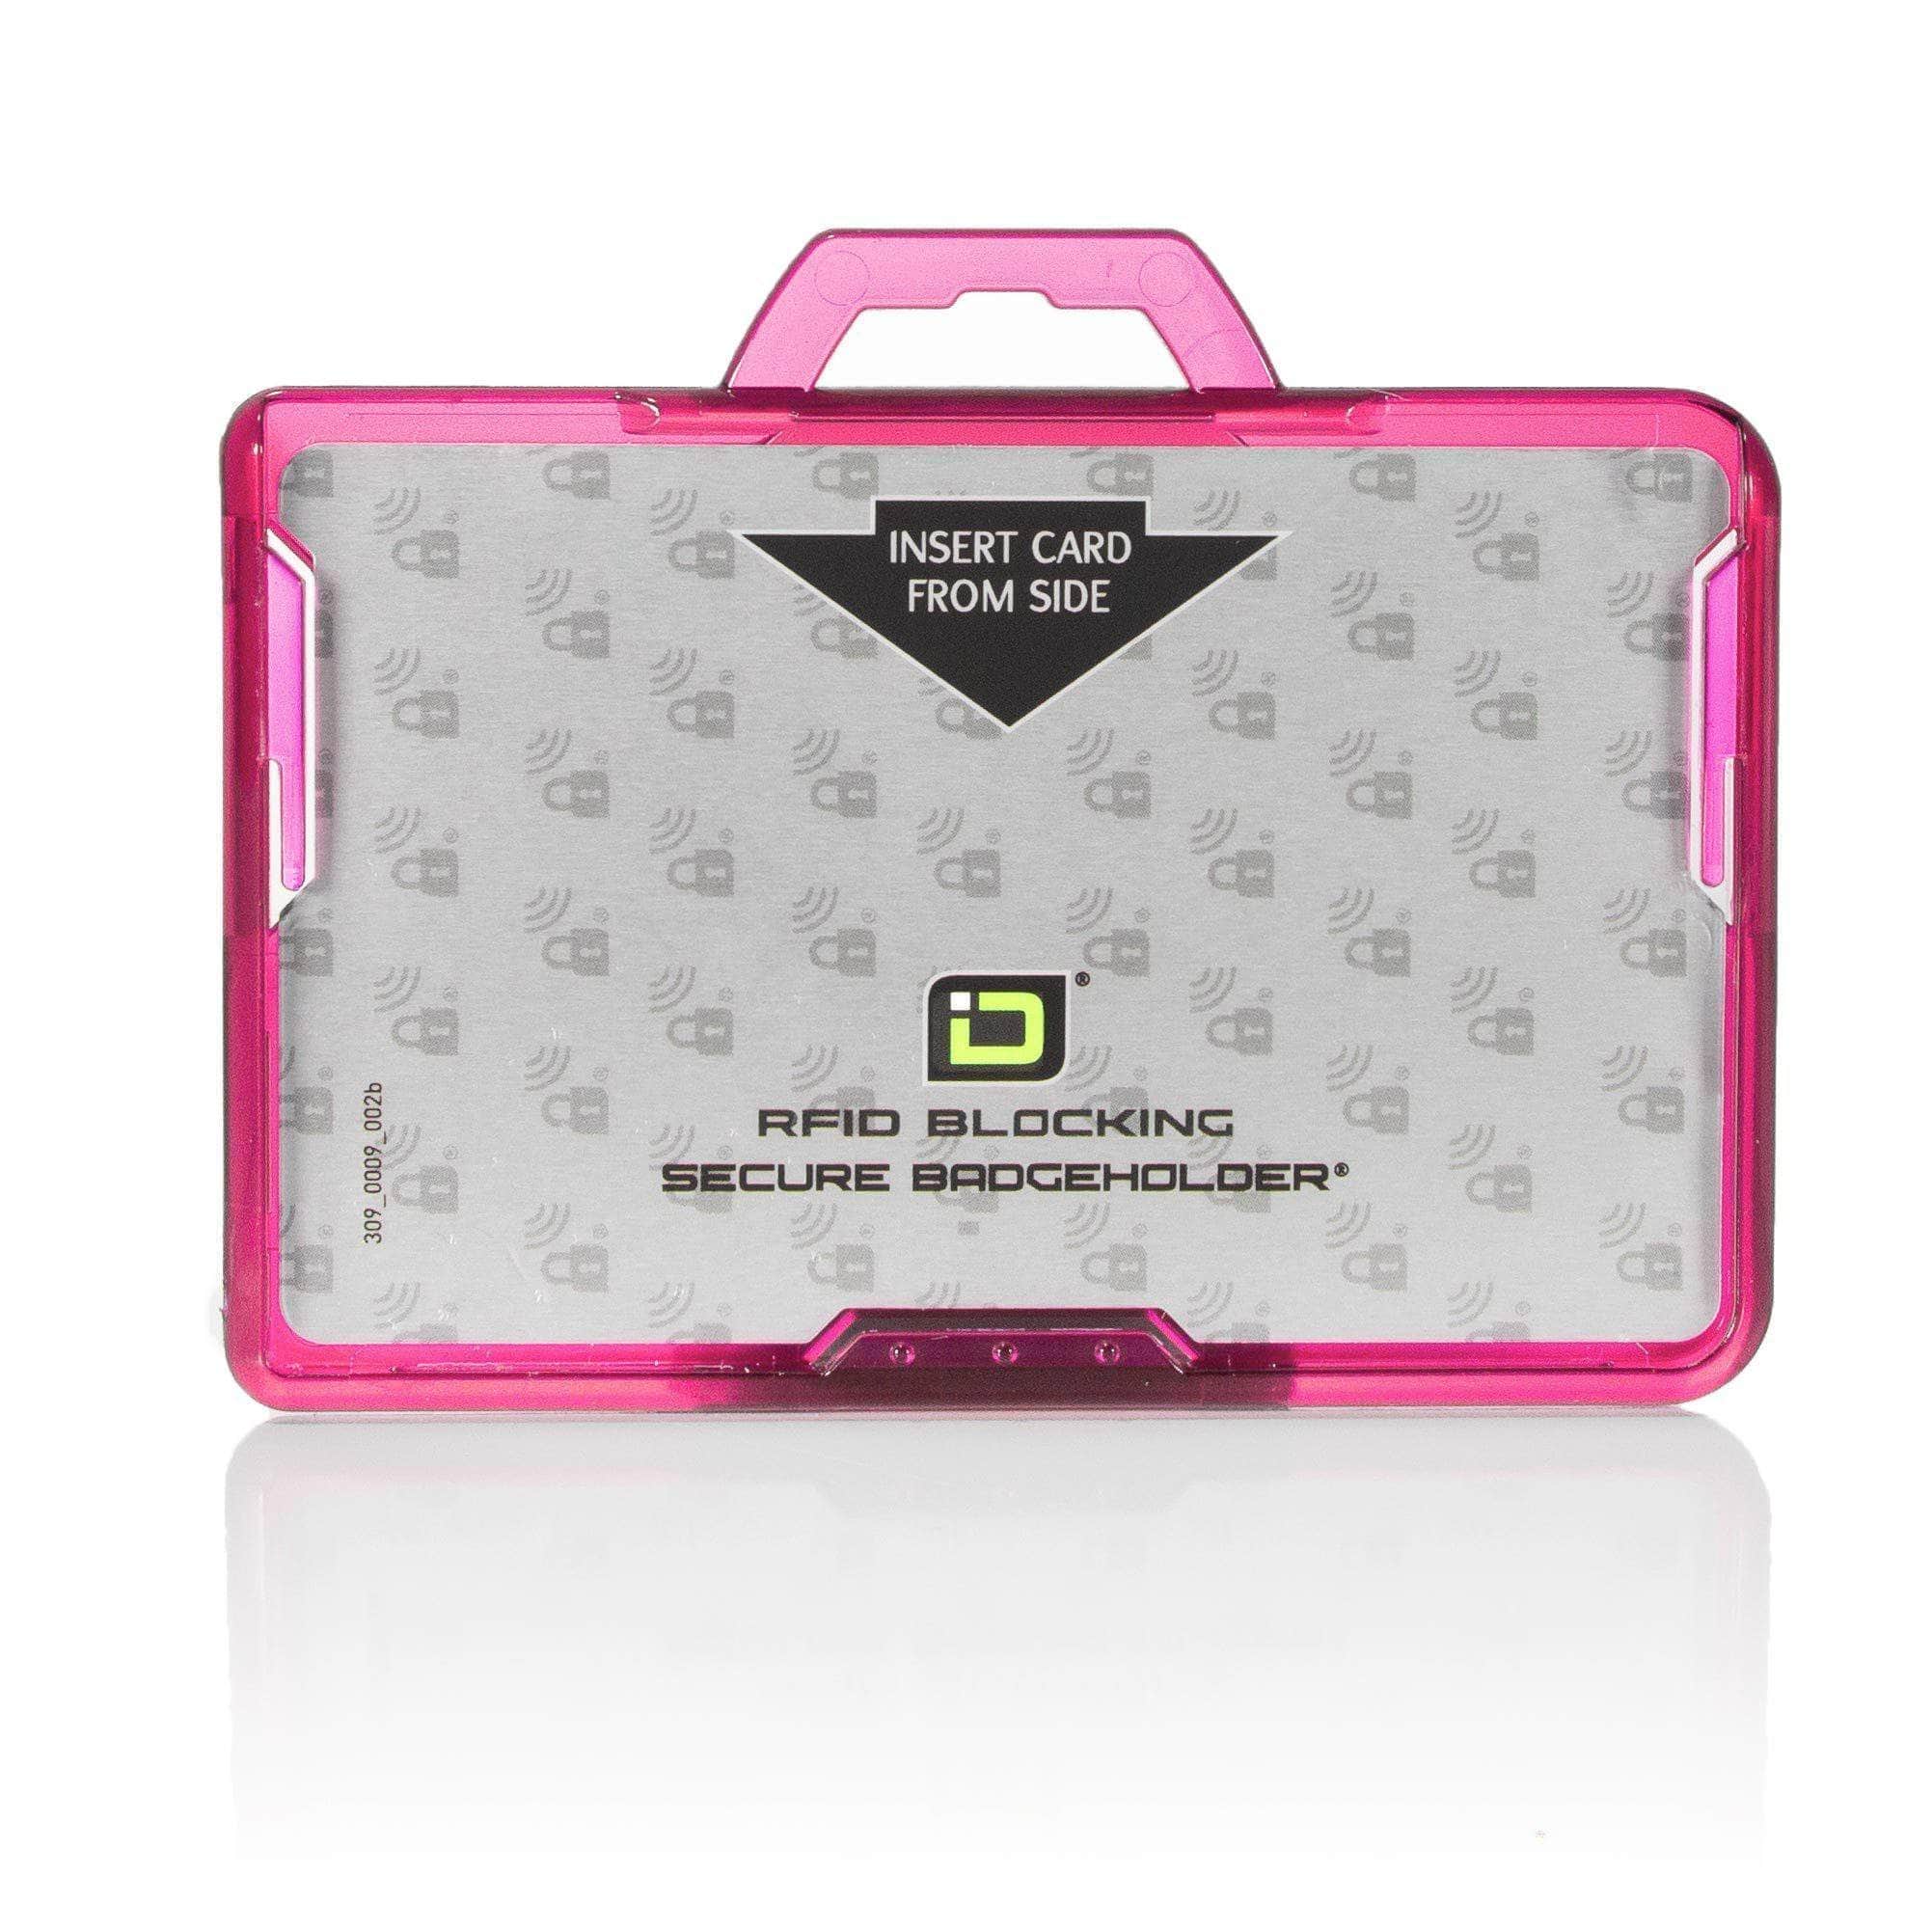 ID Stronghold Badgeholder Pink Secure Badge Holder Lite ™ Landscape 1 Card Holder